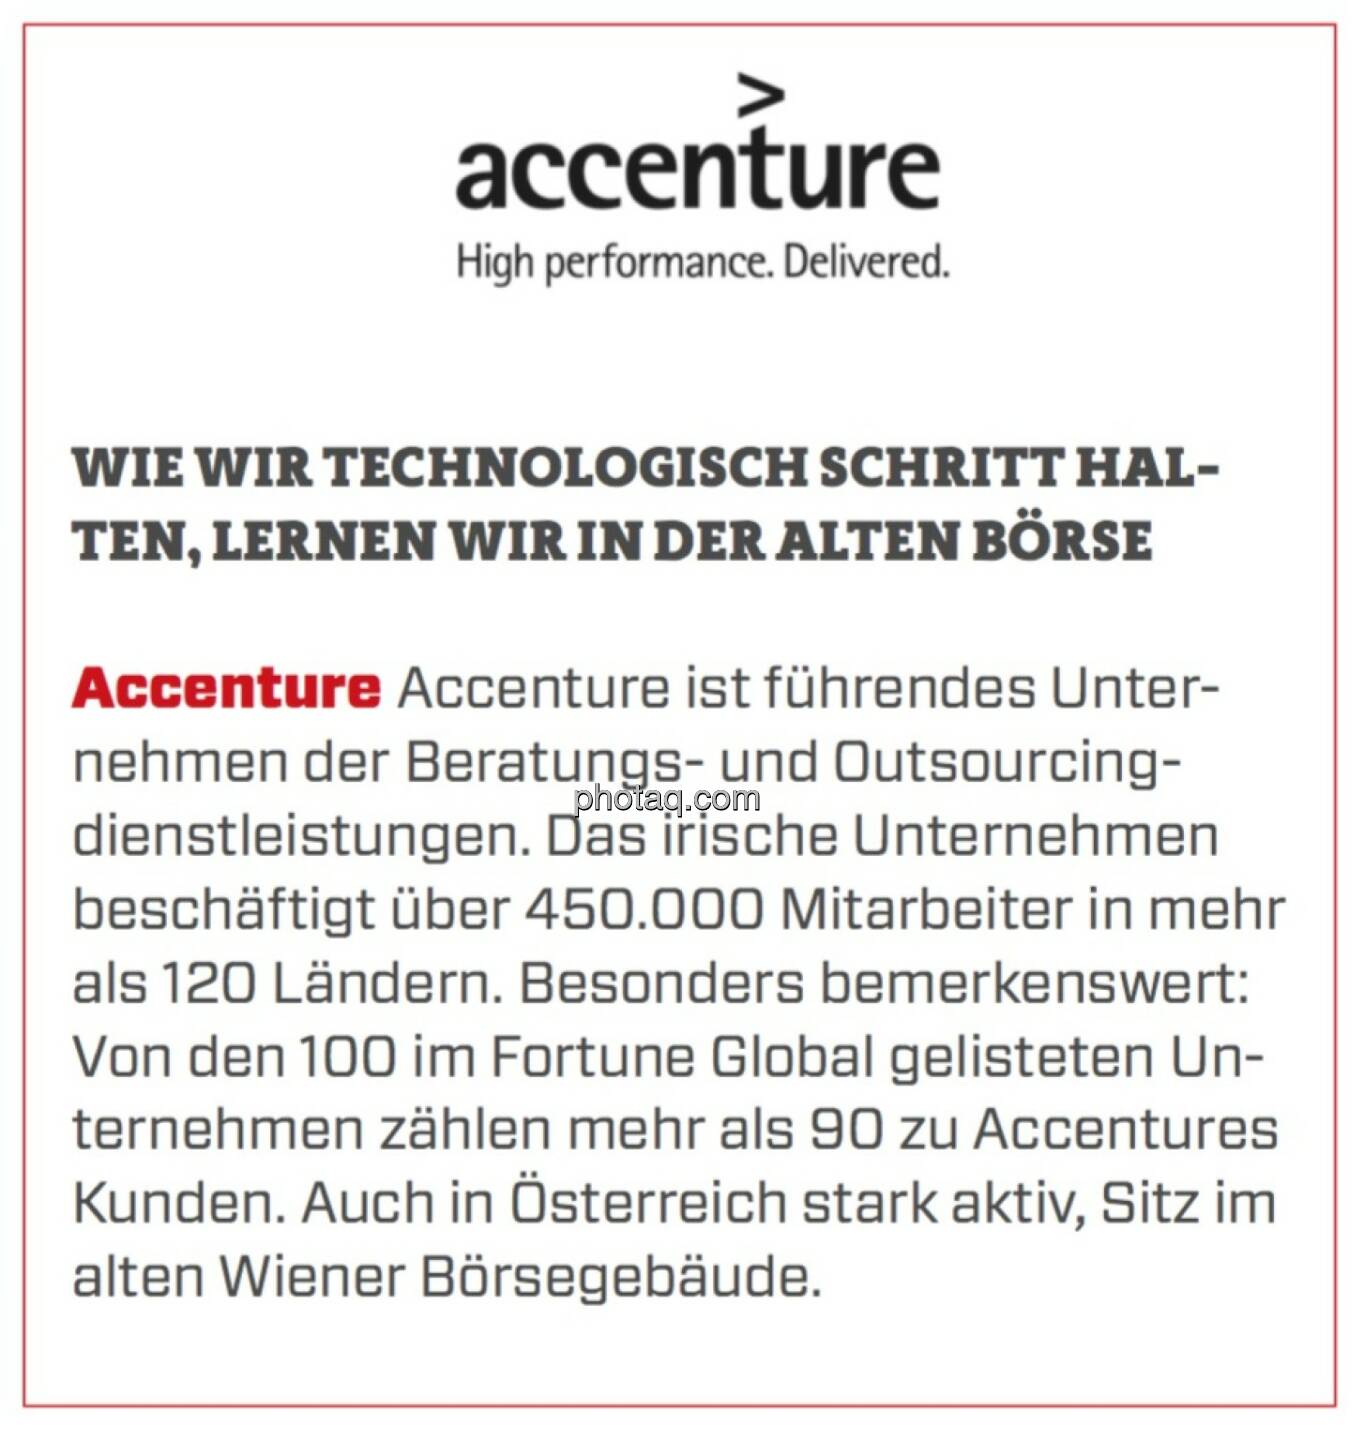 Accenture - Wie wir technologisch Schritt halten, lernen wir in der alten Börse: Accenture ist führendes Unternehmen der Beratungs- und Outsourcingdienstleistungen. Das irische Unternehmen beschäftigt über 450.000 Mitarbeiter in mehr als 120 Ländern. Besonders bemerkenswert: Von den 100 im Fortune Global gelisteten Unternehmen zählen mehr als 90 zu Accentures Kunden. Auch in Österreich stark aktiv, Sitz im alten Wiener Börsegebäude.